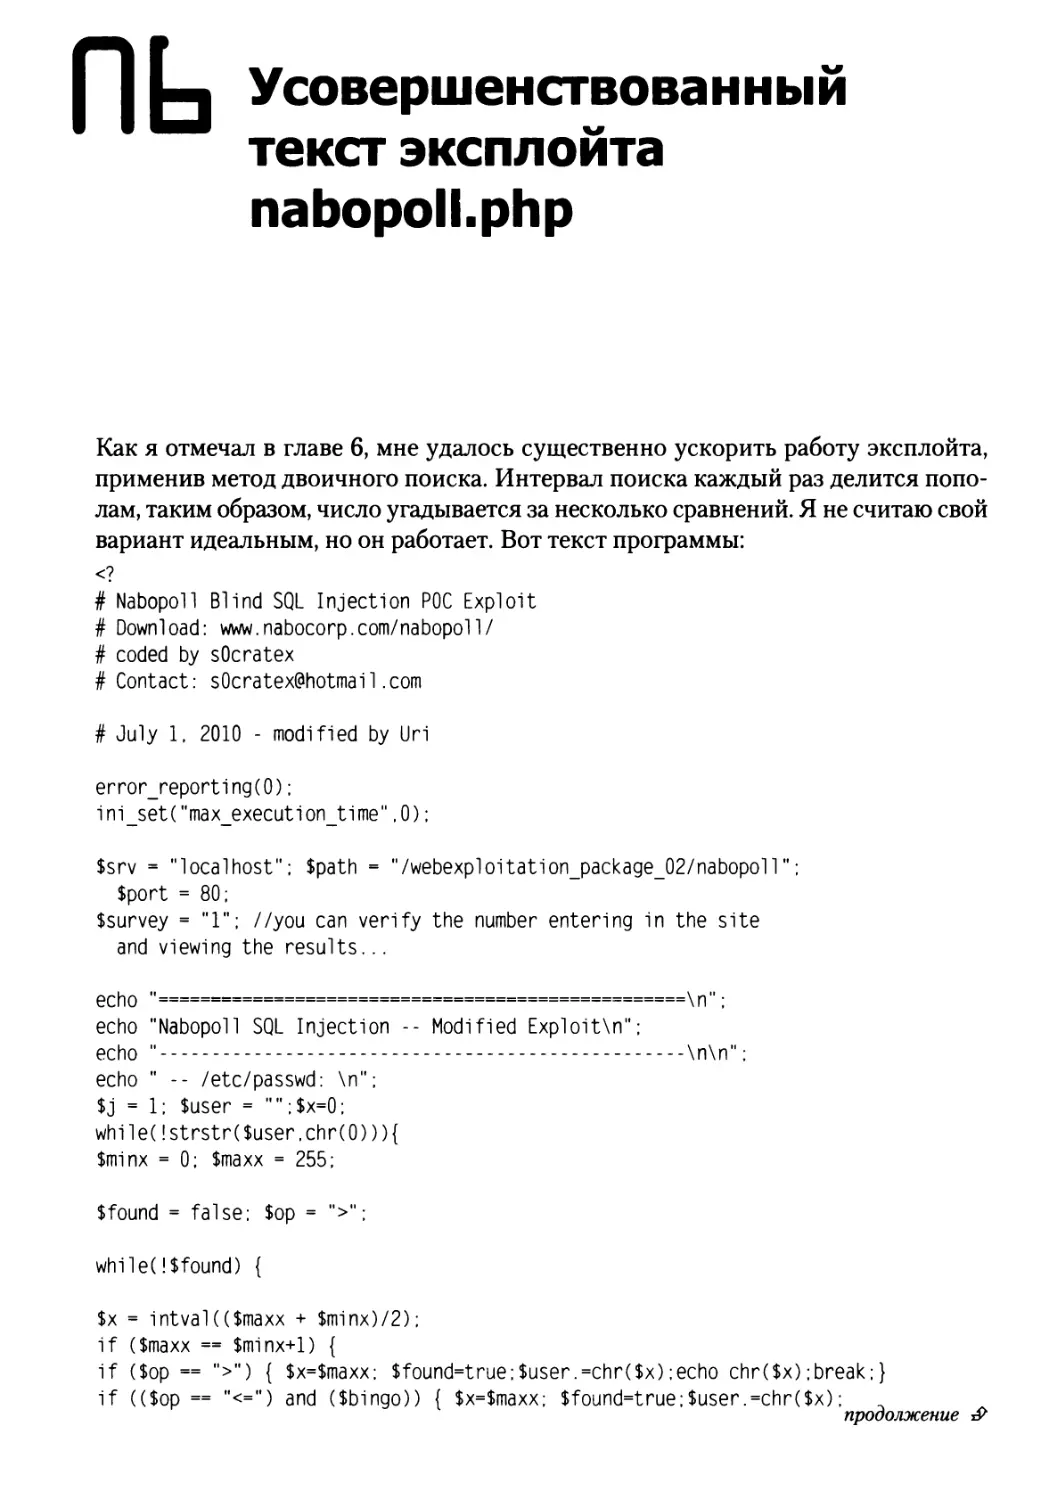 Приложение 6. Усовершенствованный текст эксплойта nabopoll.php